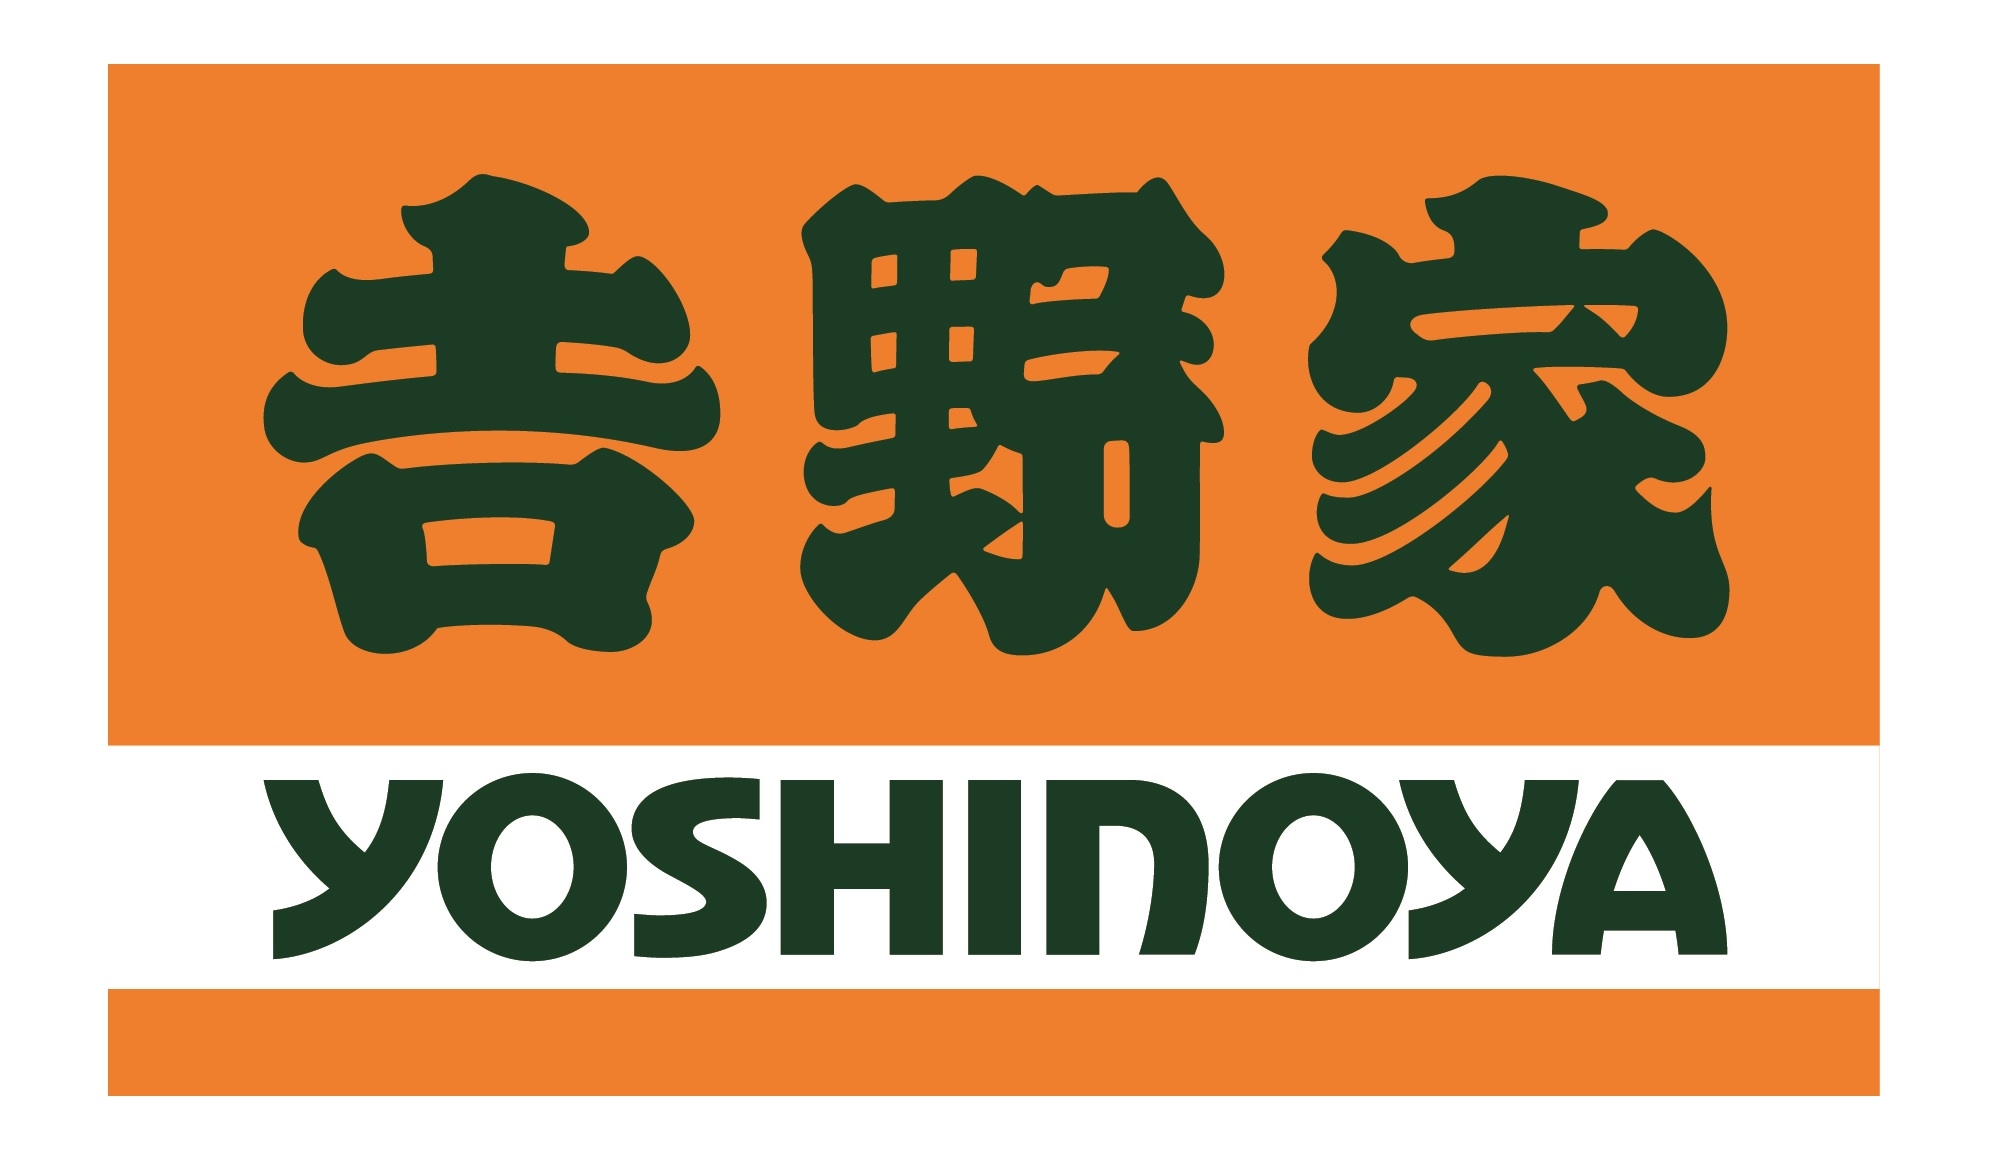 hung's food group - yoshinoya